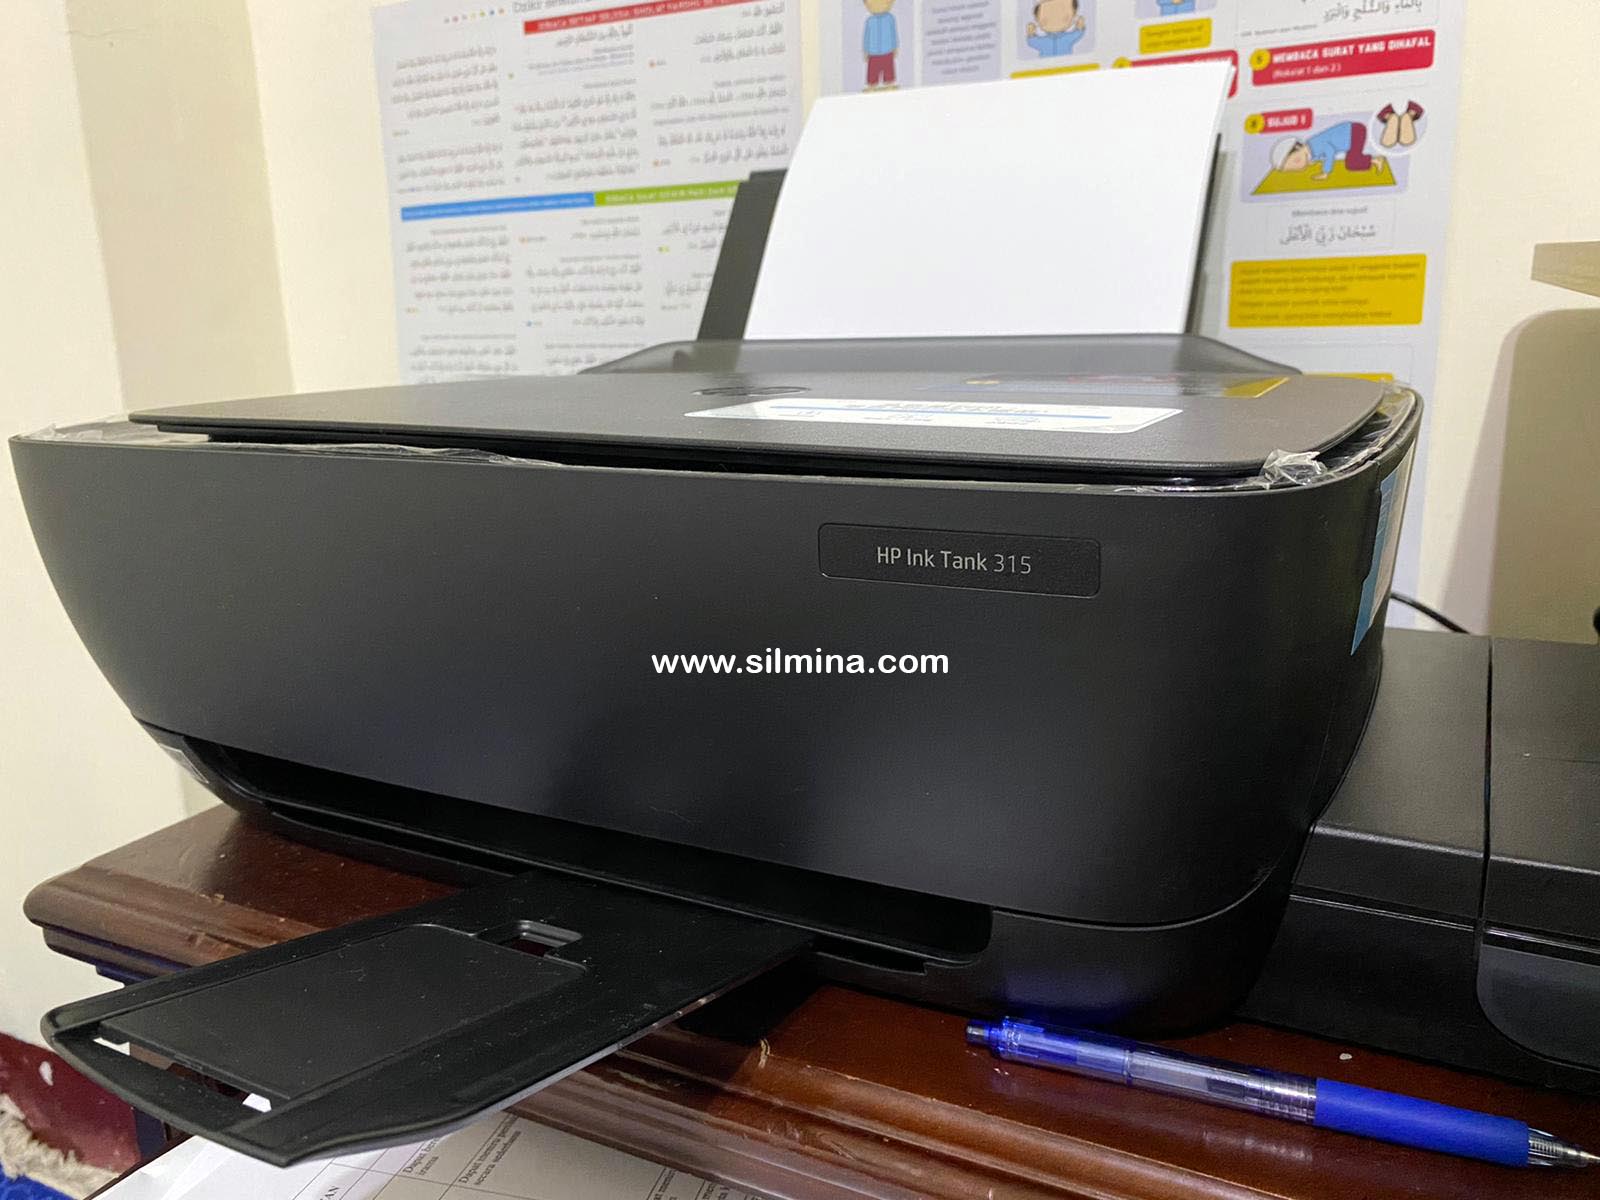 Sharing Pengalaman Memilih Printer untuk Kegiatan Sekolah Rumah (Homeschooling)